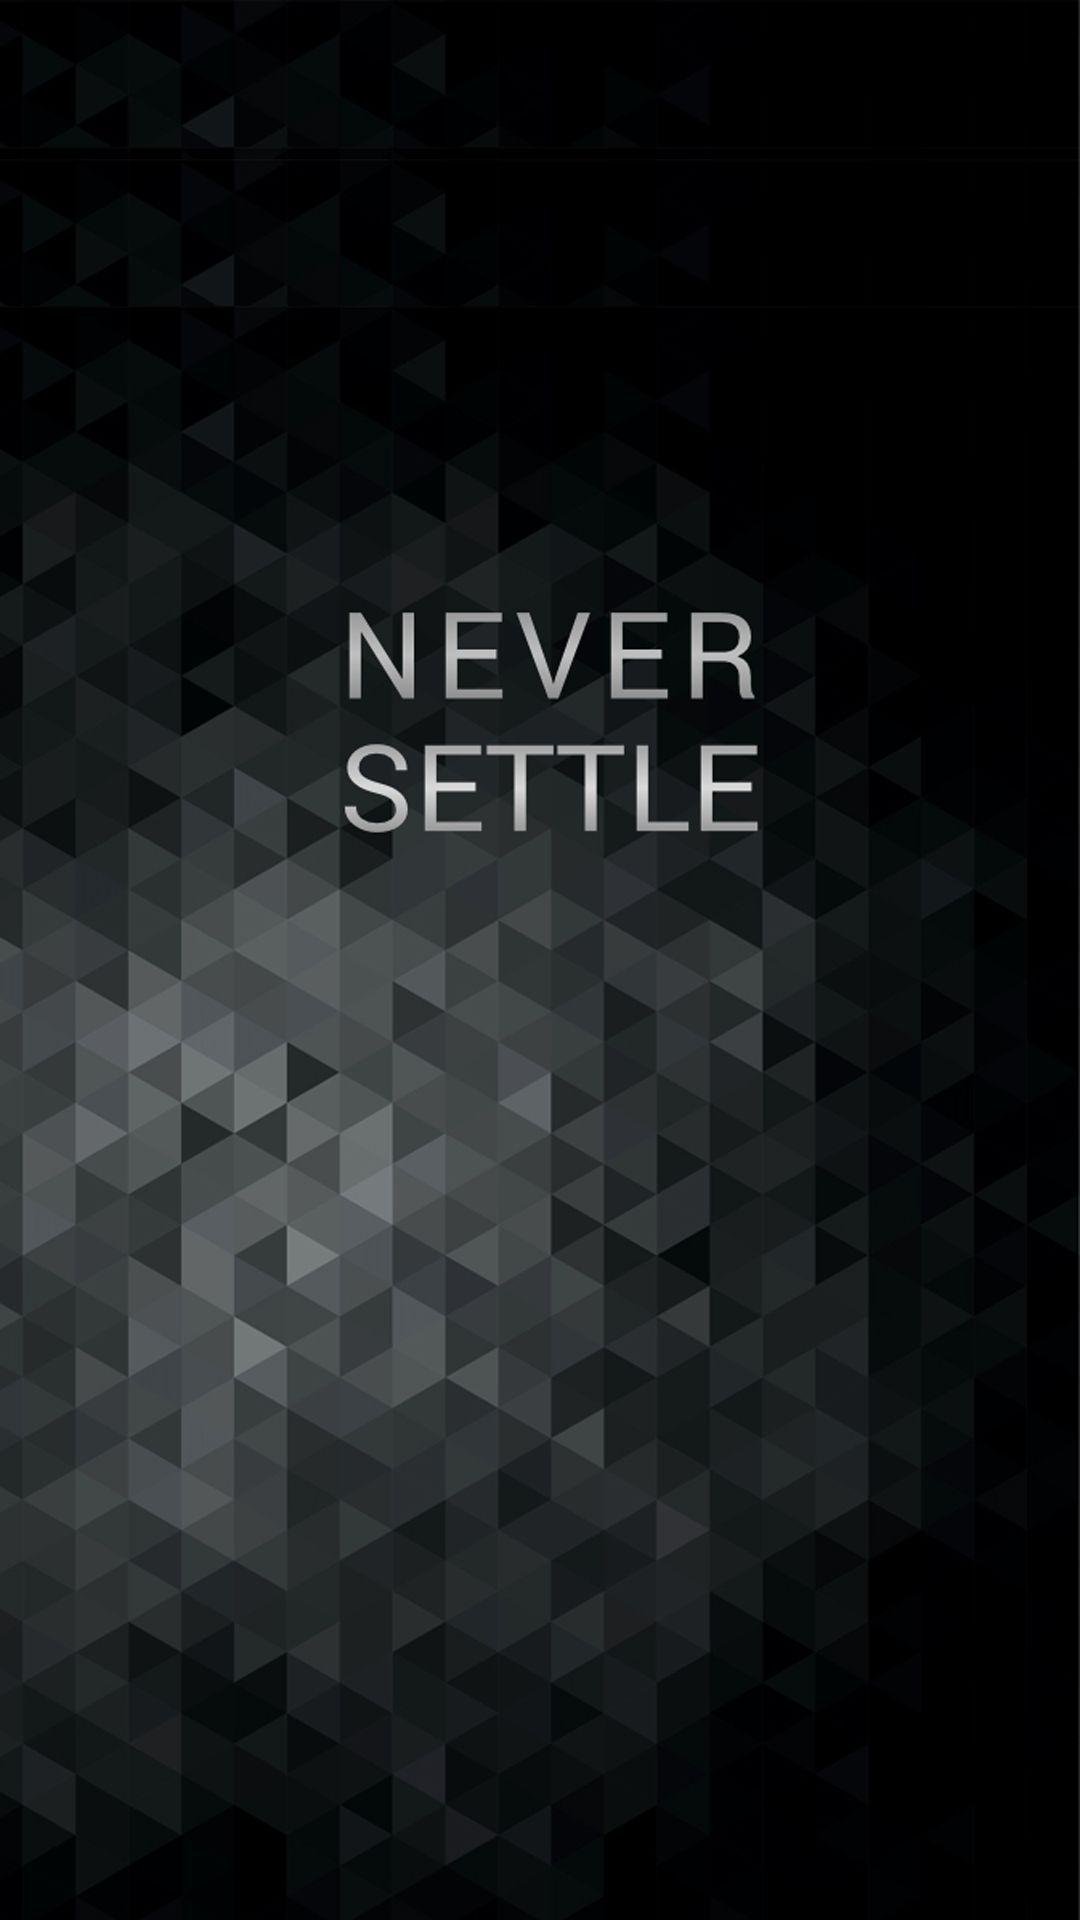 Never settle wallpaper